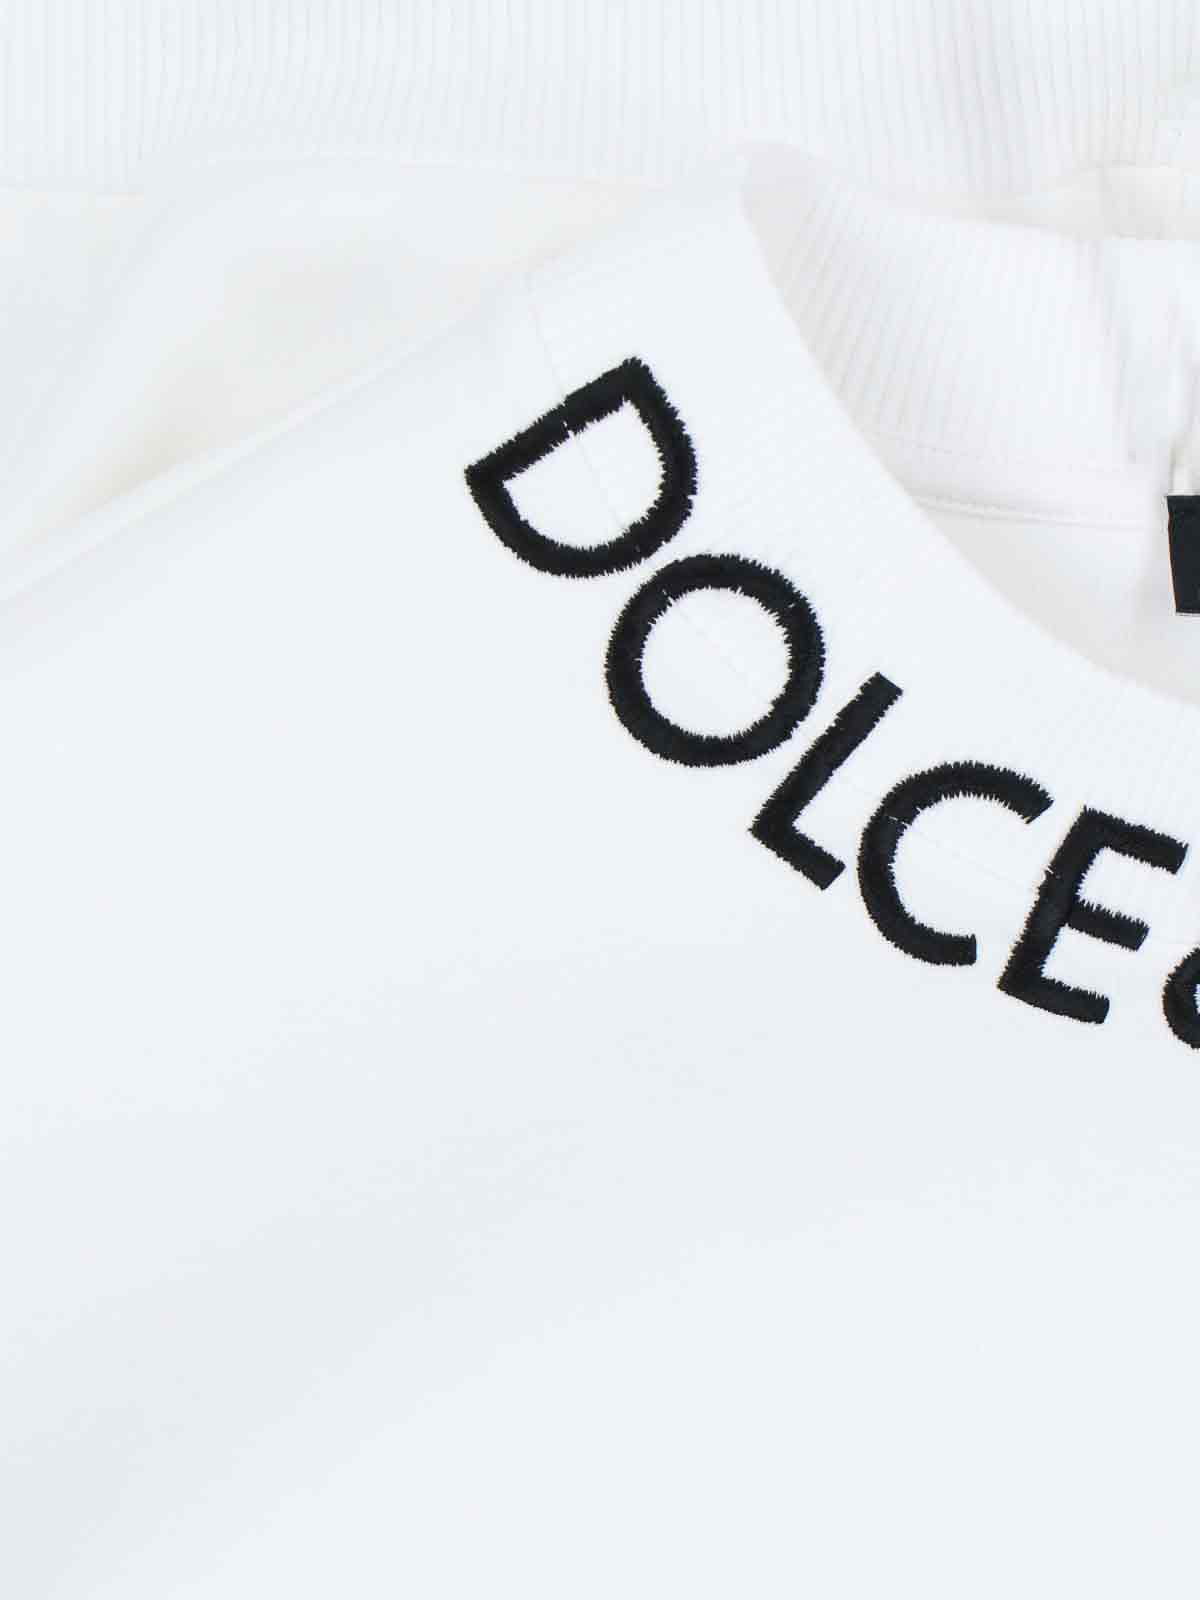 Shop Dolce & Gabbana Sudadera - Blanco In White